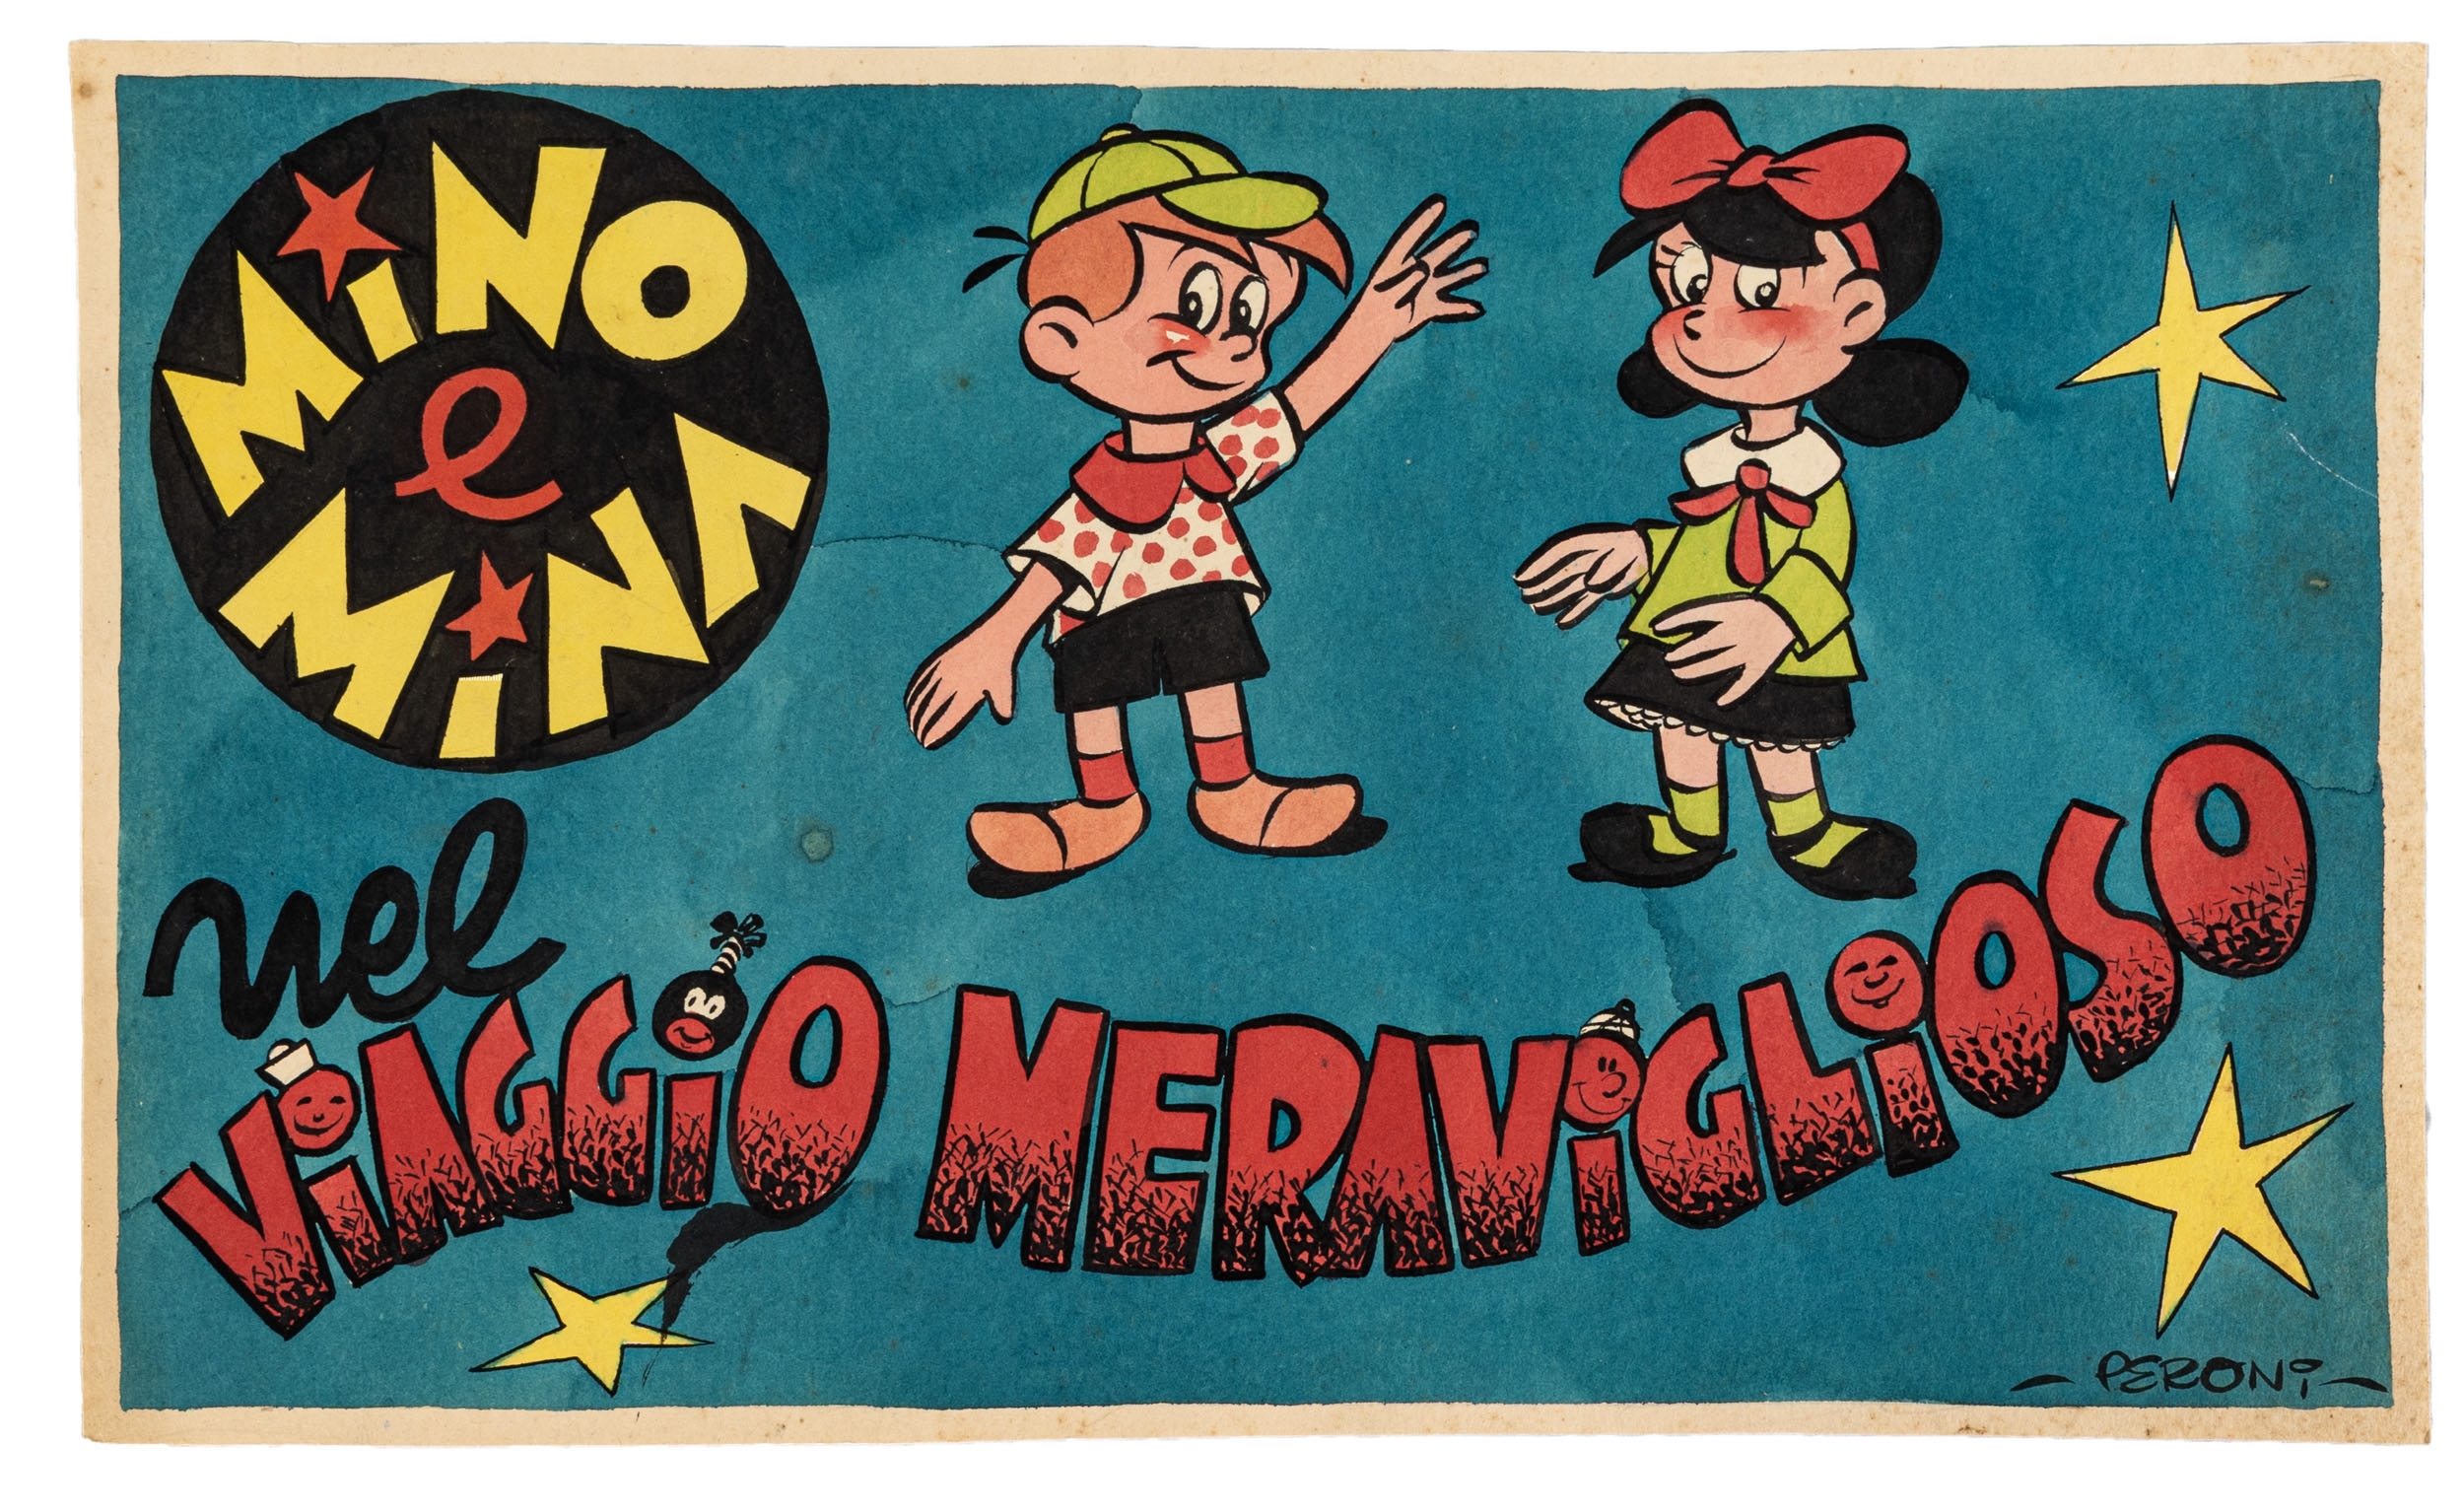 Mino e Mina nel viaggio meraviglioso by Carlo Peroni, 1953